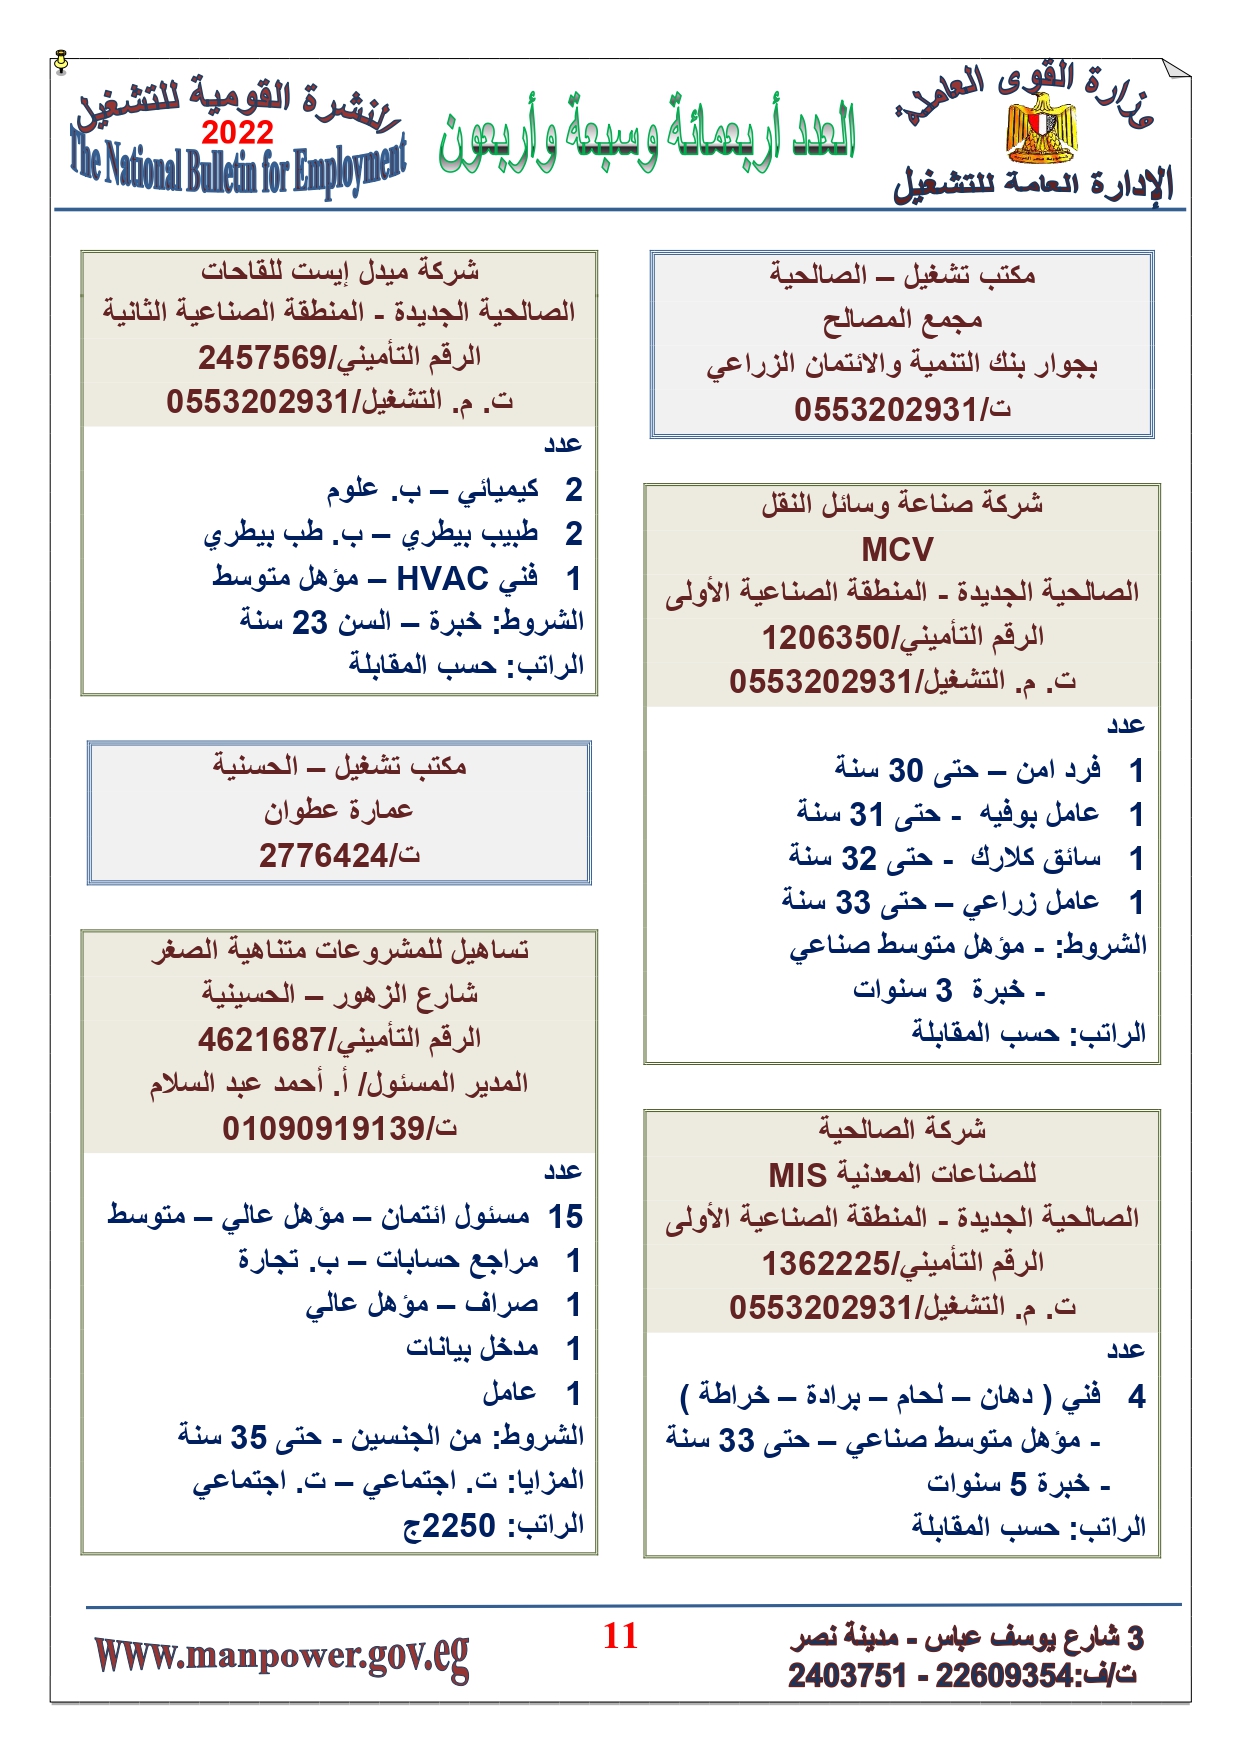 وظائف خالية بمصر وزارة القوي العاملة تعلن عن 2530 وظيفة شاغرة لجميع المؤهلات خلال فبراير ومارس 2022 7